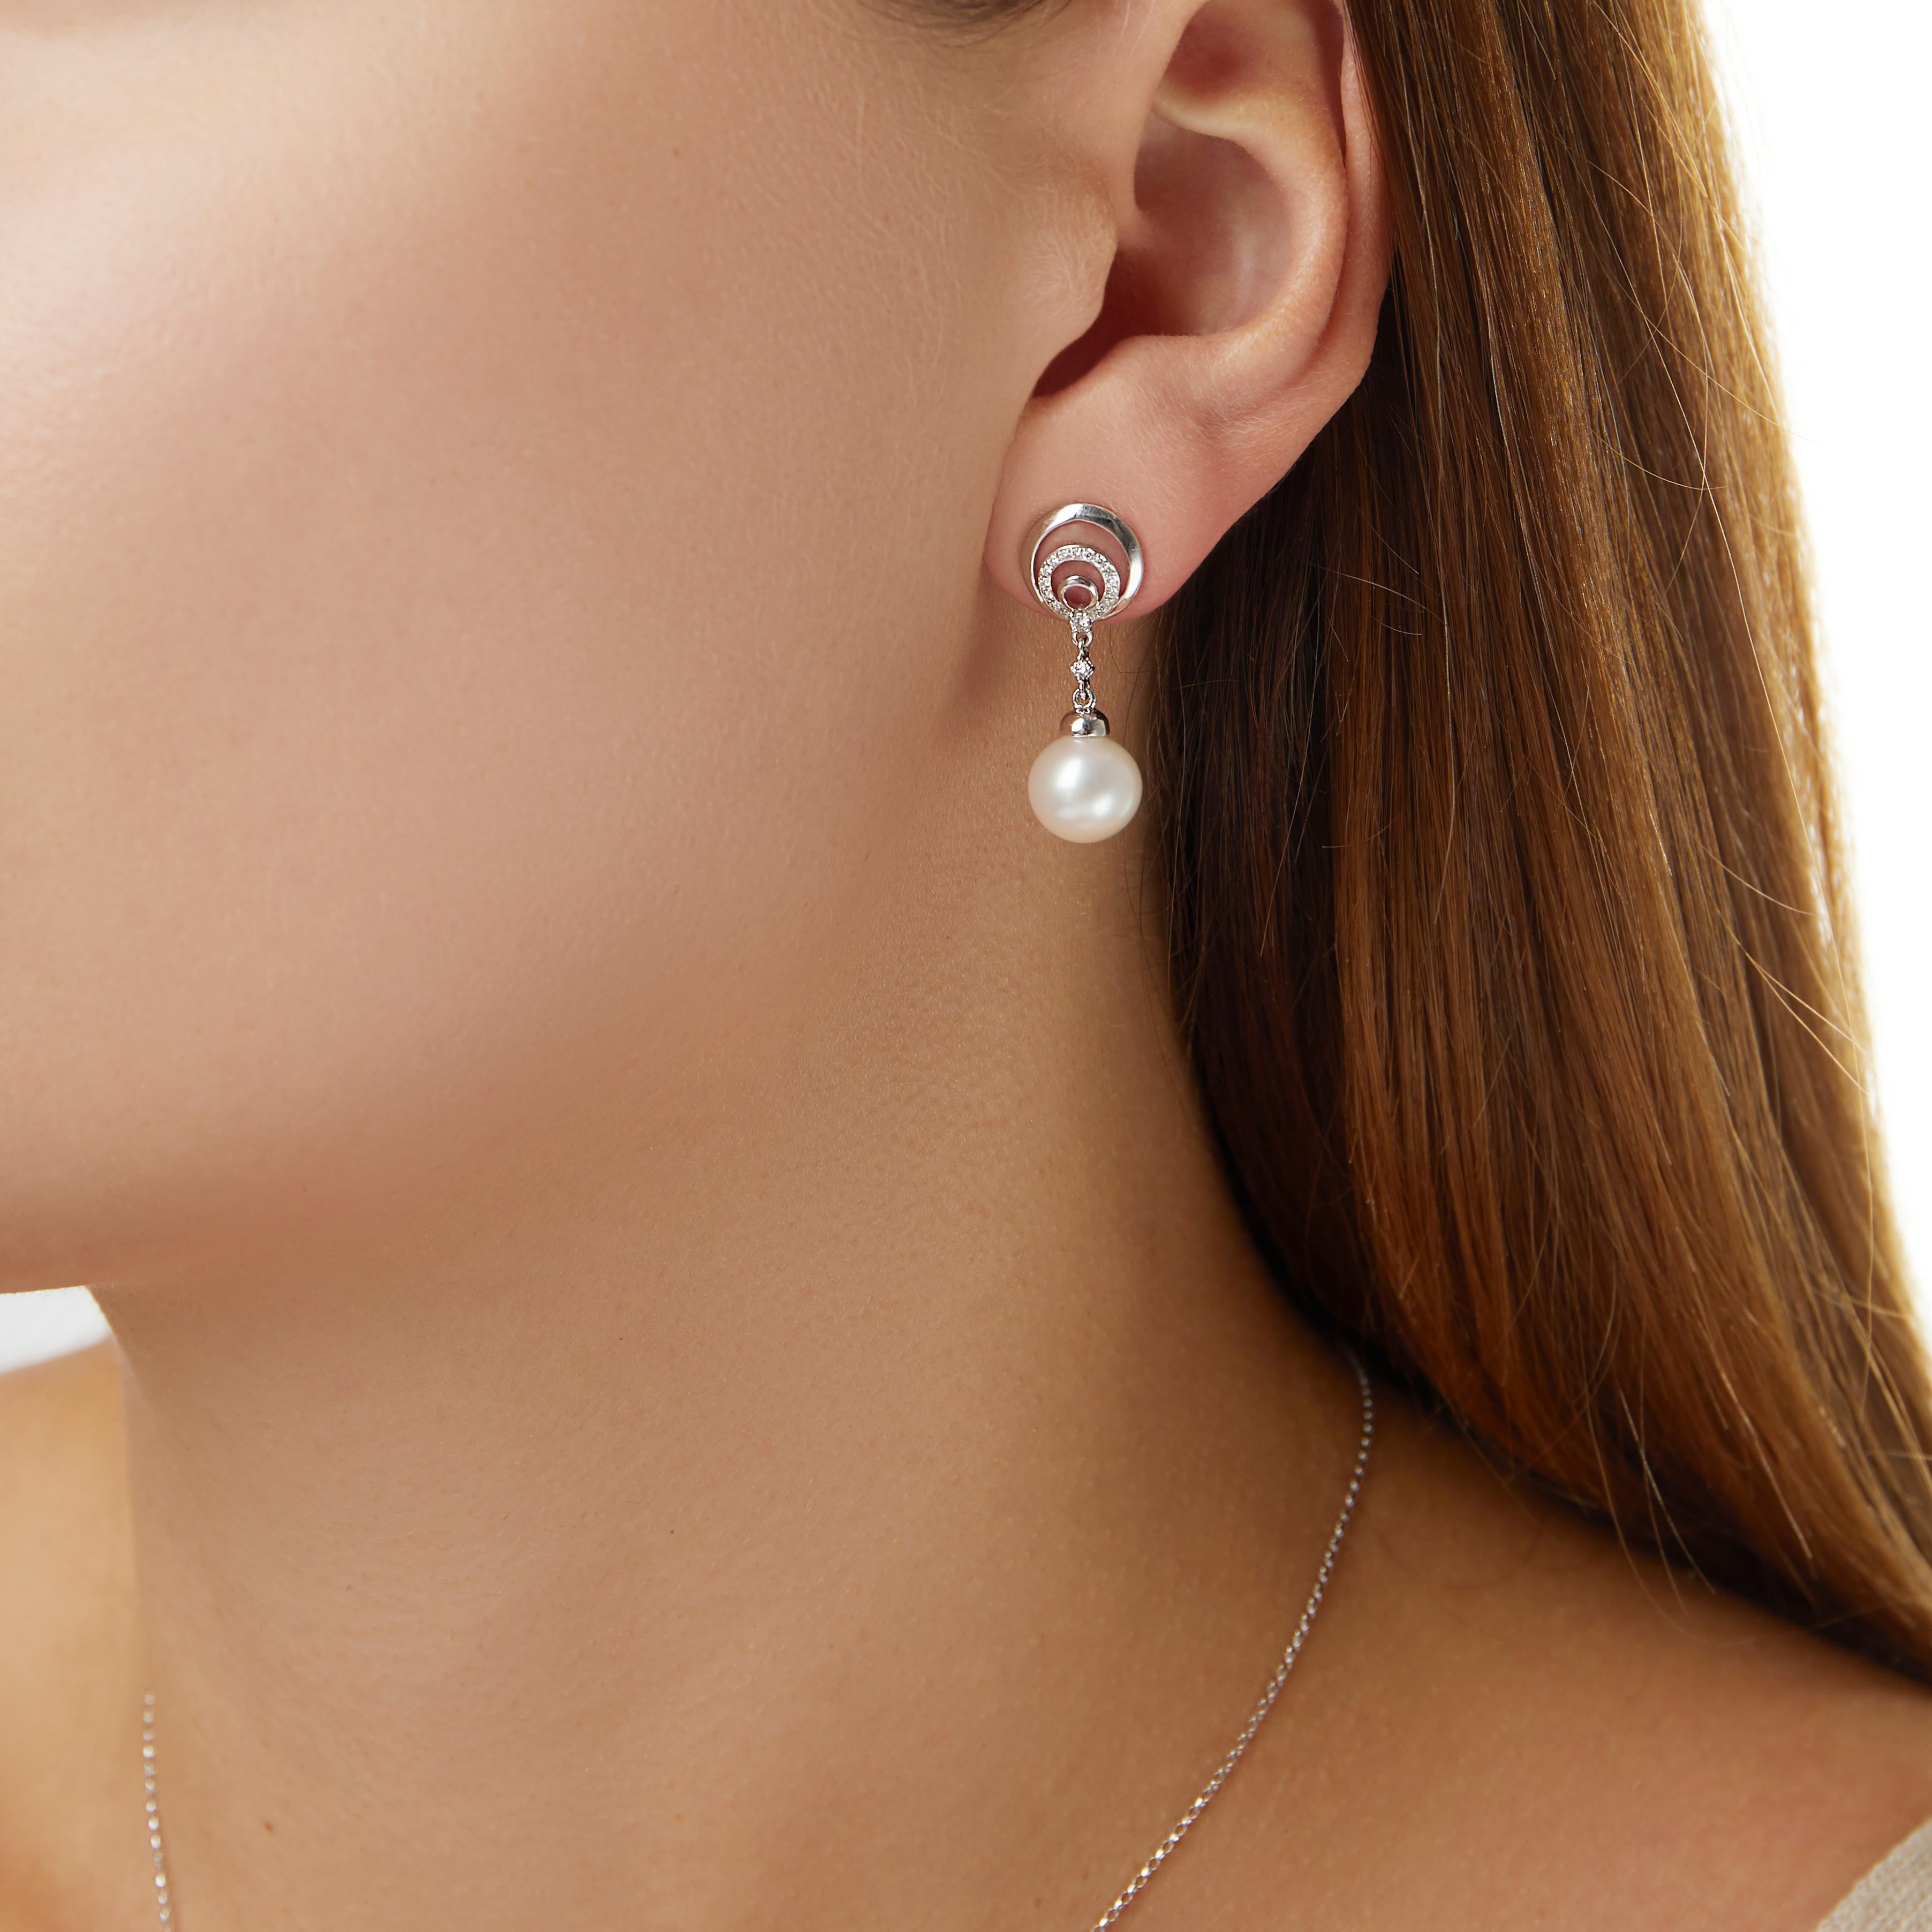 Ces élégantes boucles d'oreilles de Yoko London présentent des perles d'eau douce lustrées sous des cercles de diamants hypnotiques. Ces boucles d'oreilles uniques ont été fabriquées à la main par des experts dans notre atelier de Londres et